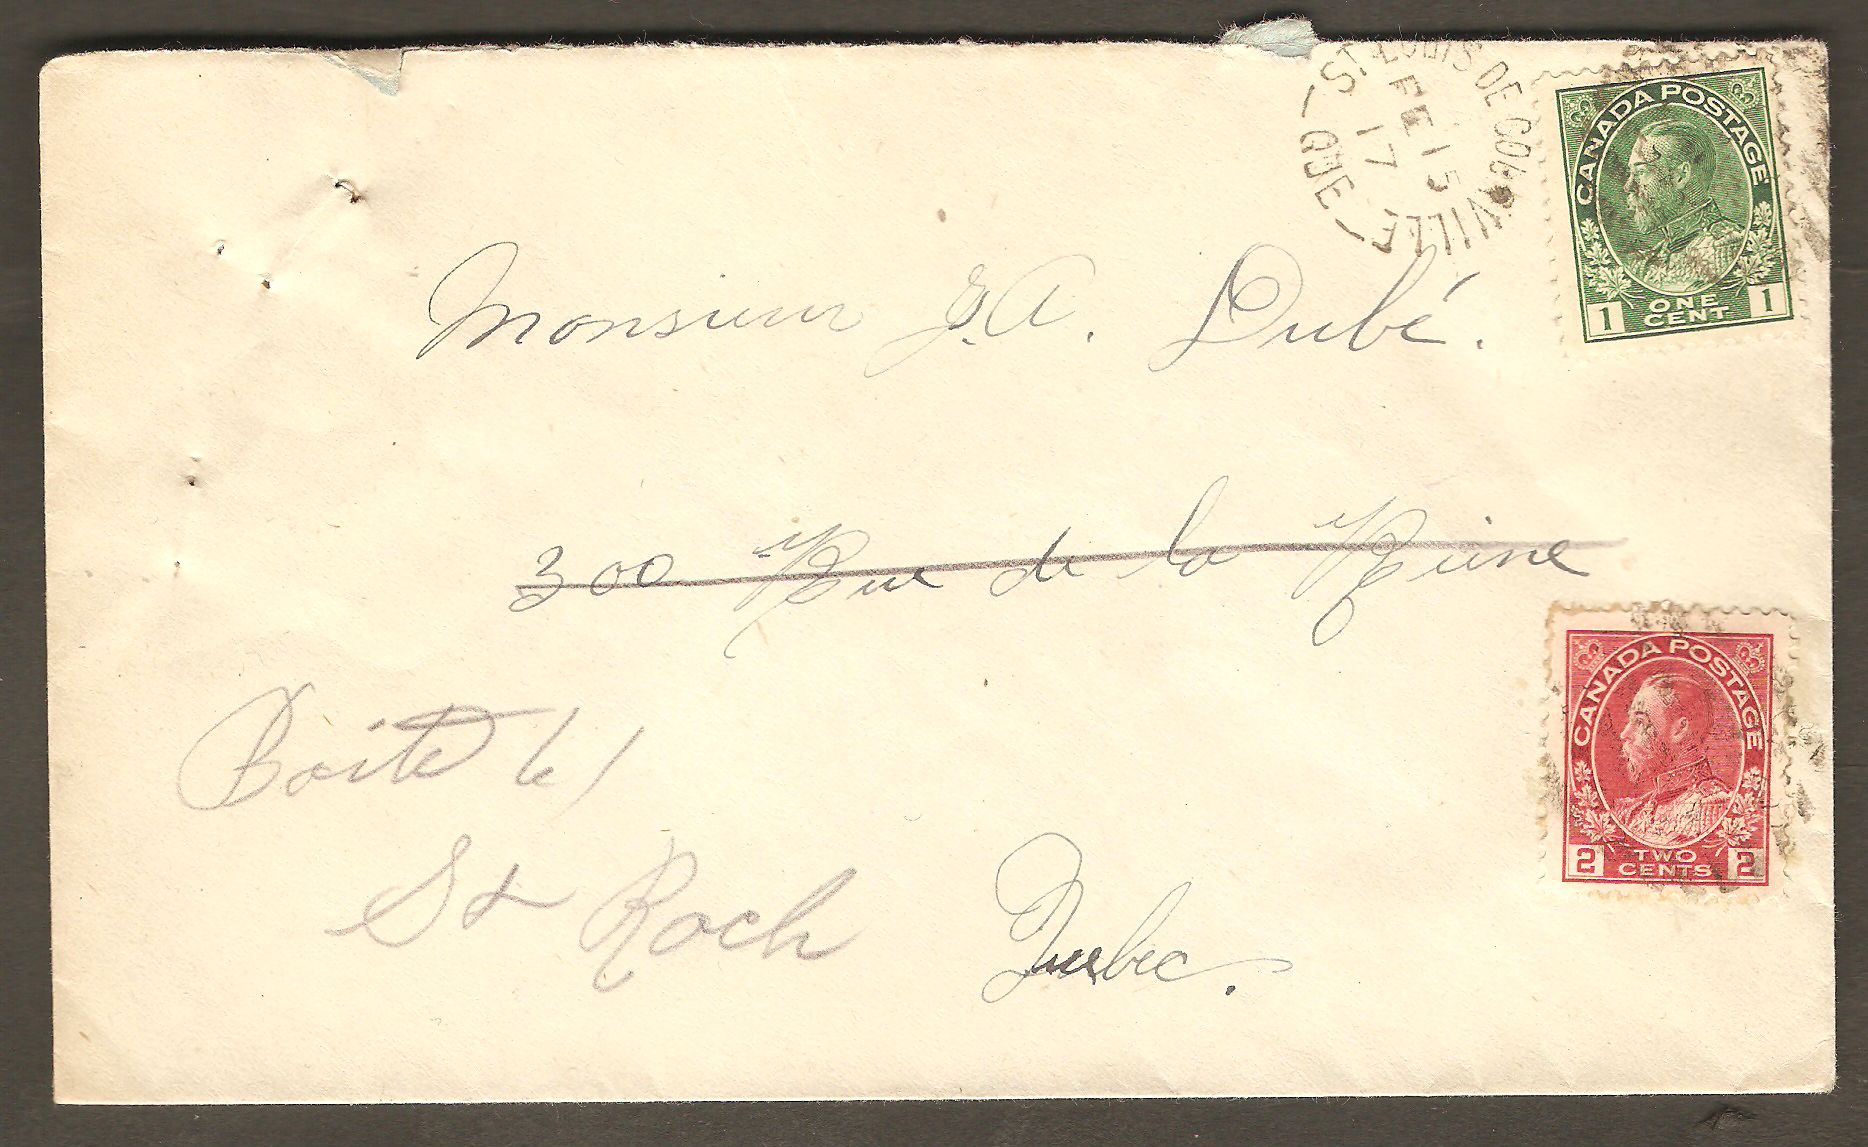 Lettre postée de Courville le 15 février 1917, soit au cours de la Première Guerre mondiale. Son affranchissement se compose de deux timbres de type « Amiral », du roi Georges V. Le  premier, un timbre vert, à 1¢, sert d'affranchissement. Le second, rouge et ayant une valeur de 2¢, sert à payer la taxe de guerre, alors obligatoire.